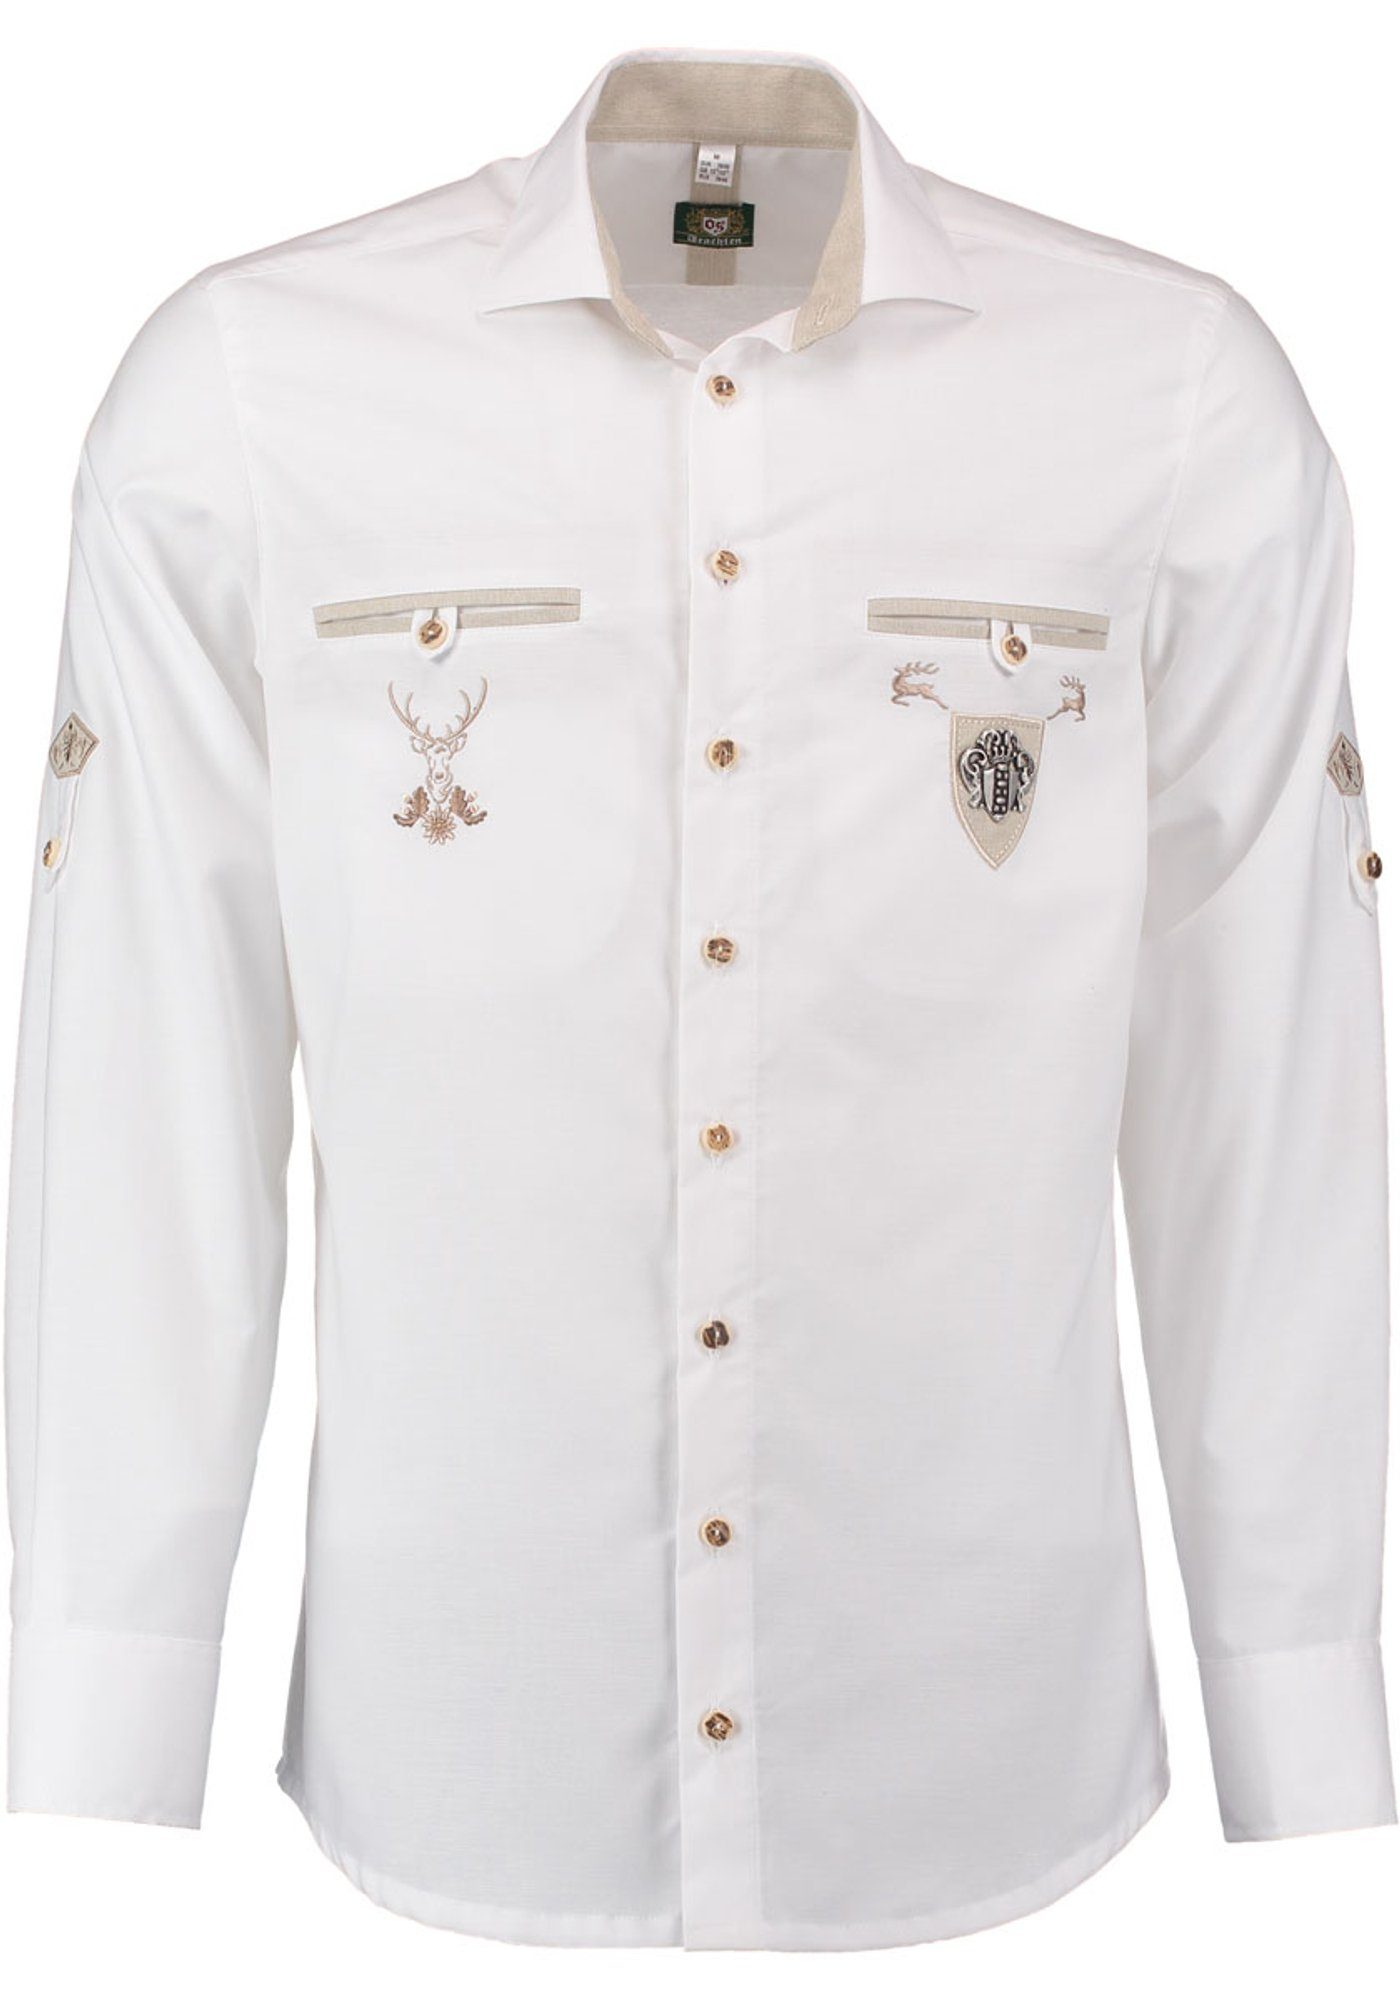 OS-Trachten Trachtenhemd Langarmhemd mit den und auf Stickerei Brusttaschen Upojo Zierteil